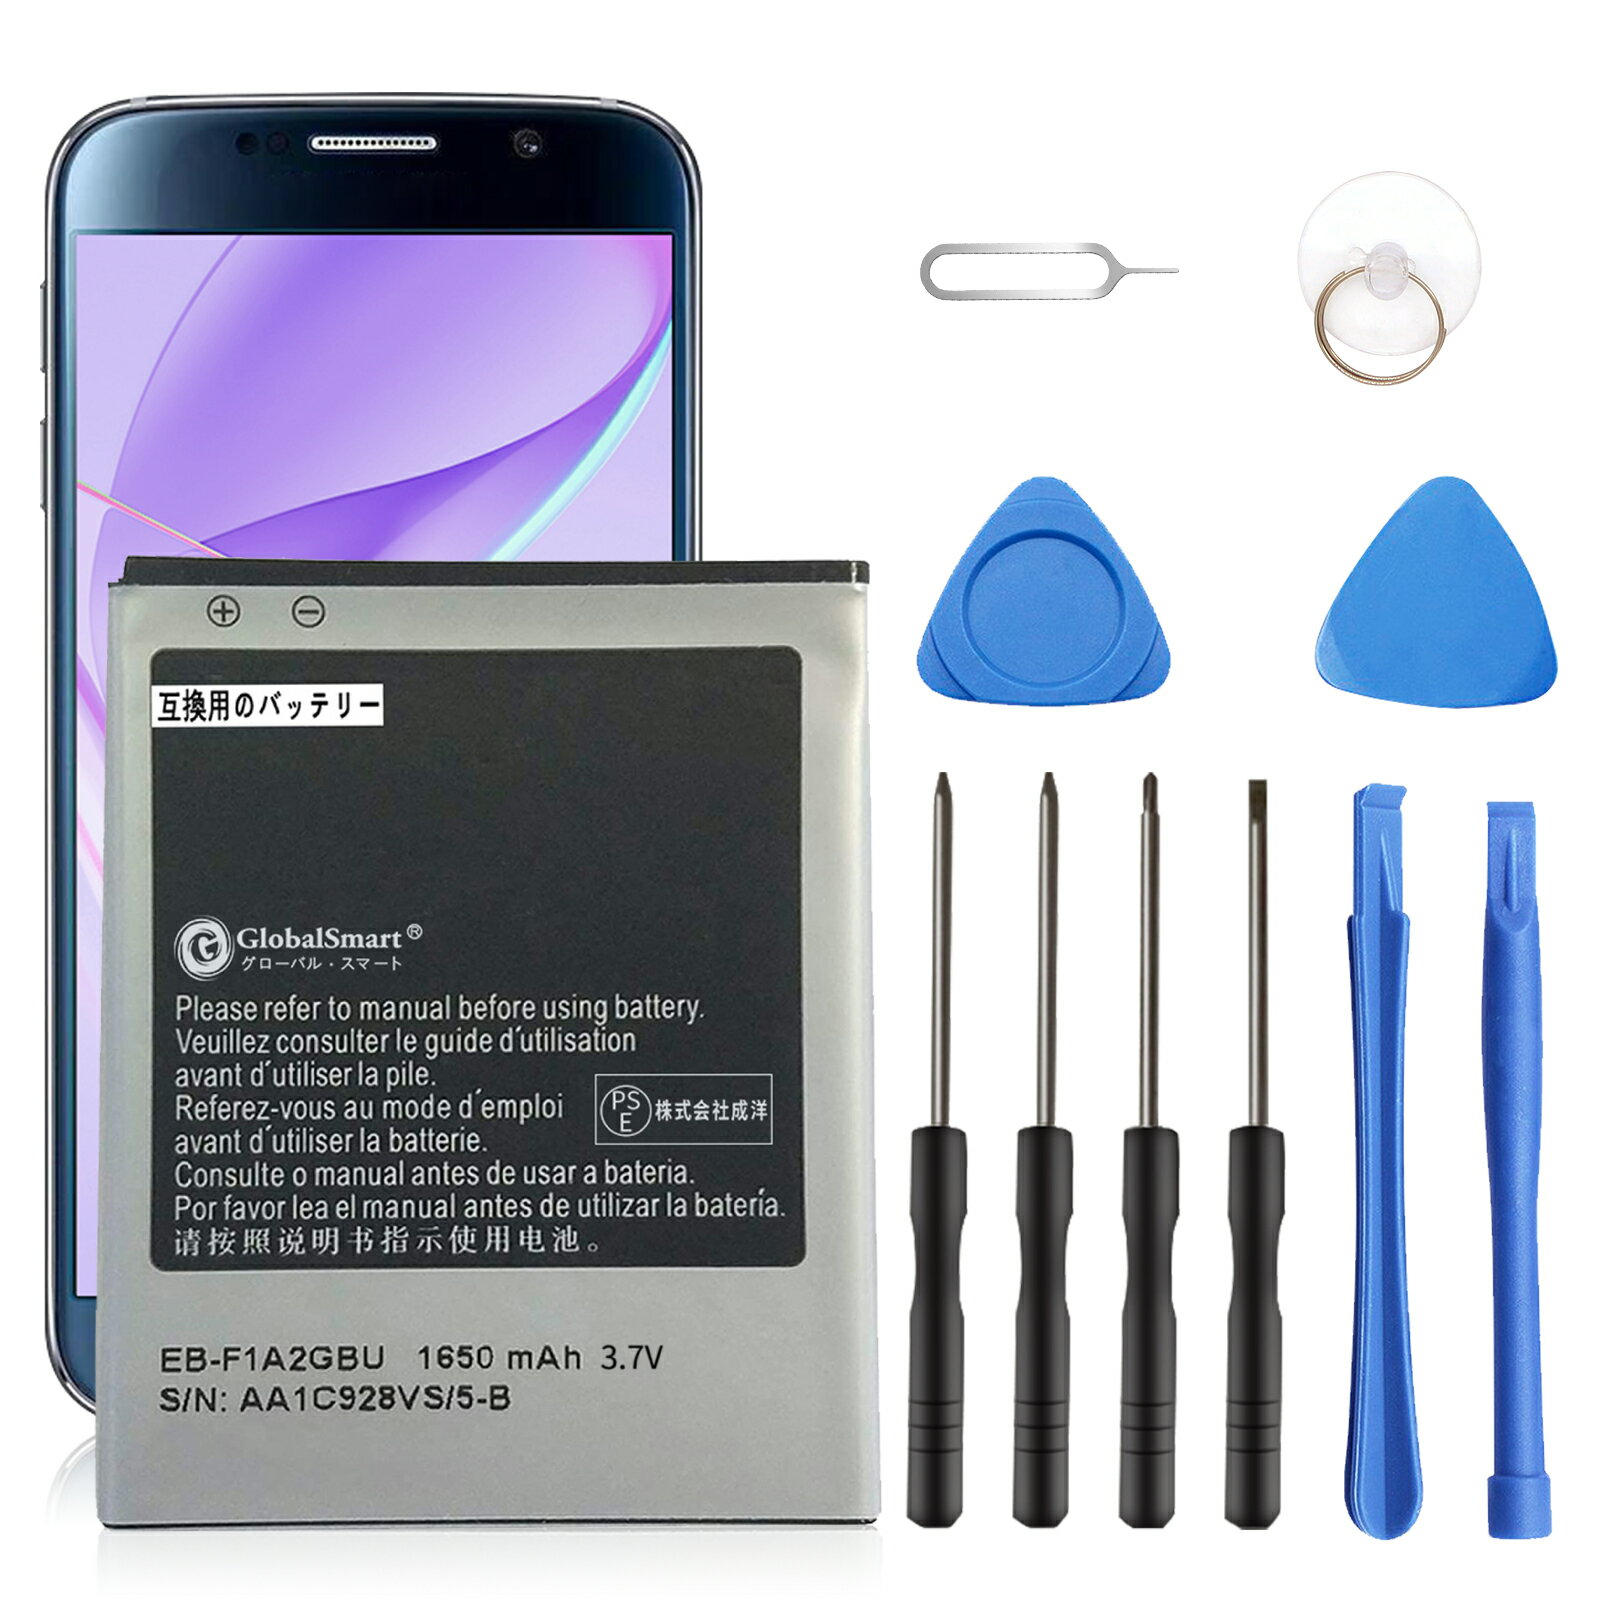 【工具付き】Samsung i9108 互換バッテリー WKY 交換バッテリー 1650mAh 3.7V 電池交換 電池交換キット 修理キット 修理セット 修理 交換バッテリーシール 【PSE認証】